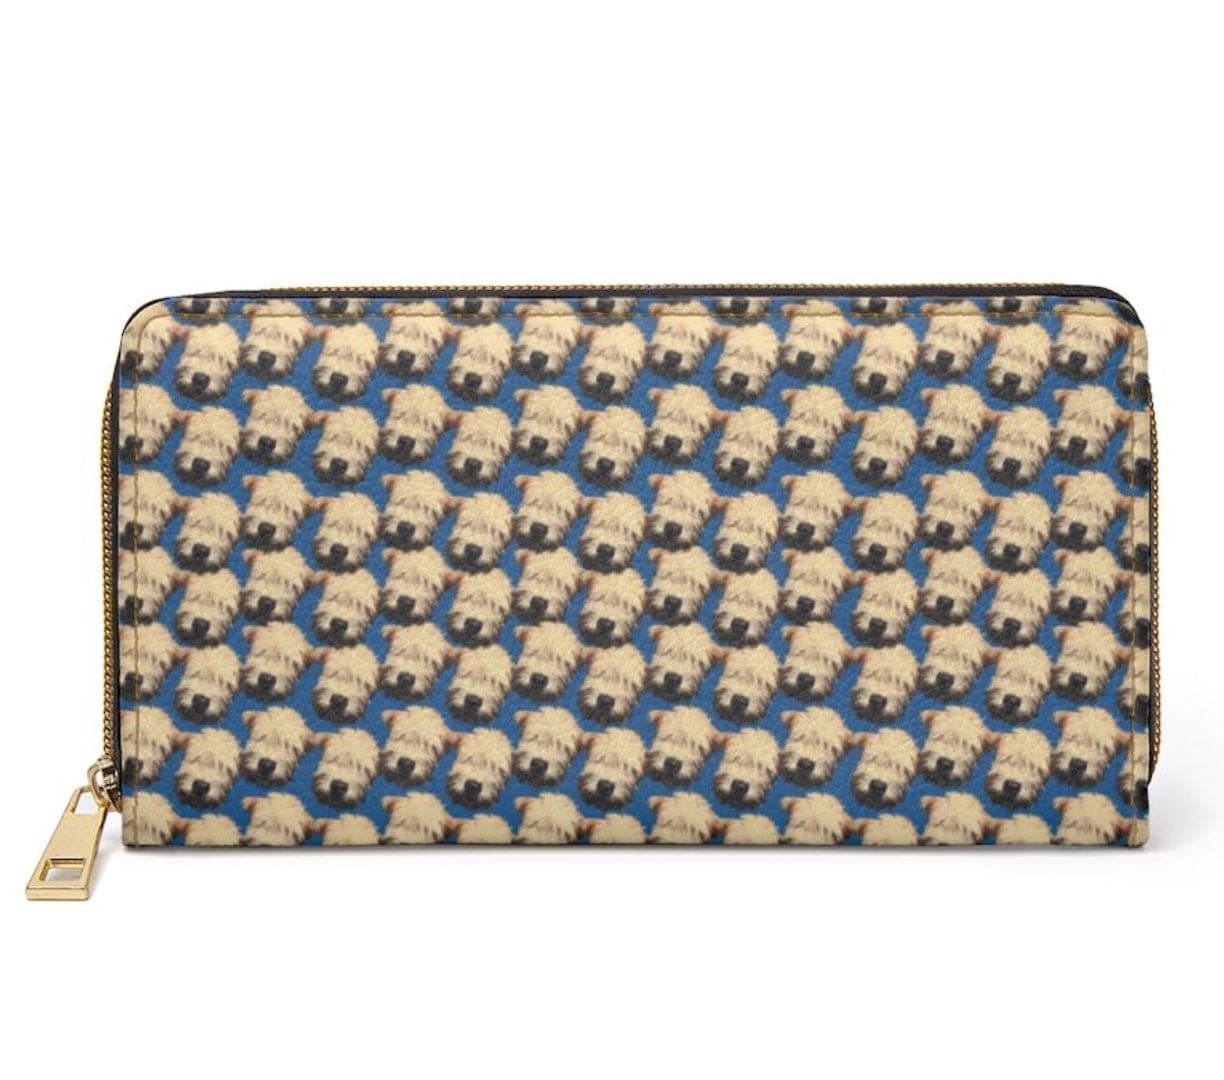 Wheaten puppy zipped wallet- cerulean blue